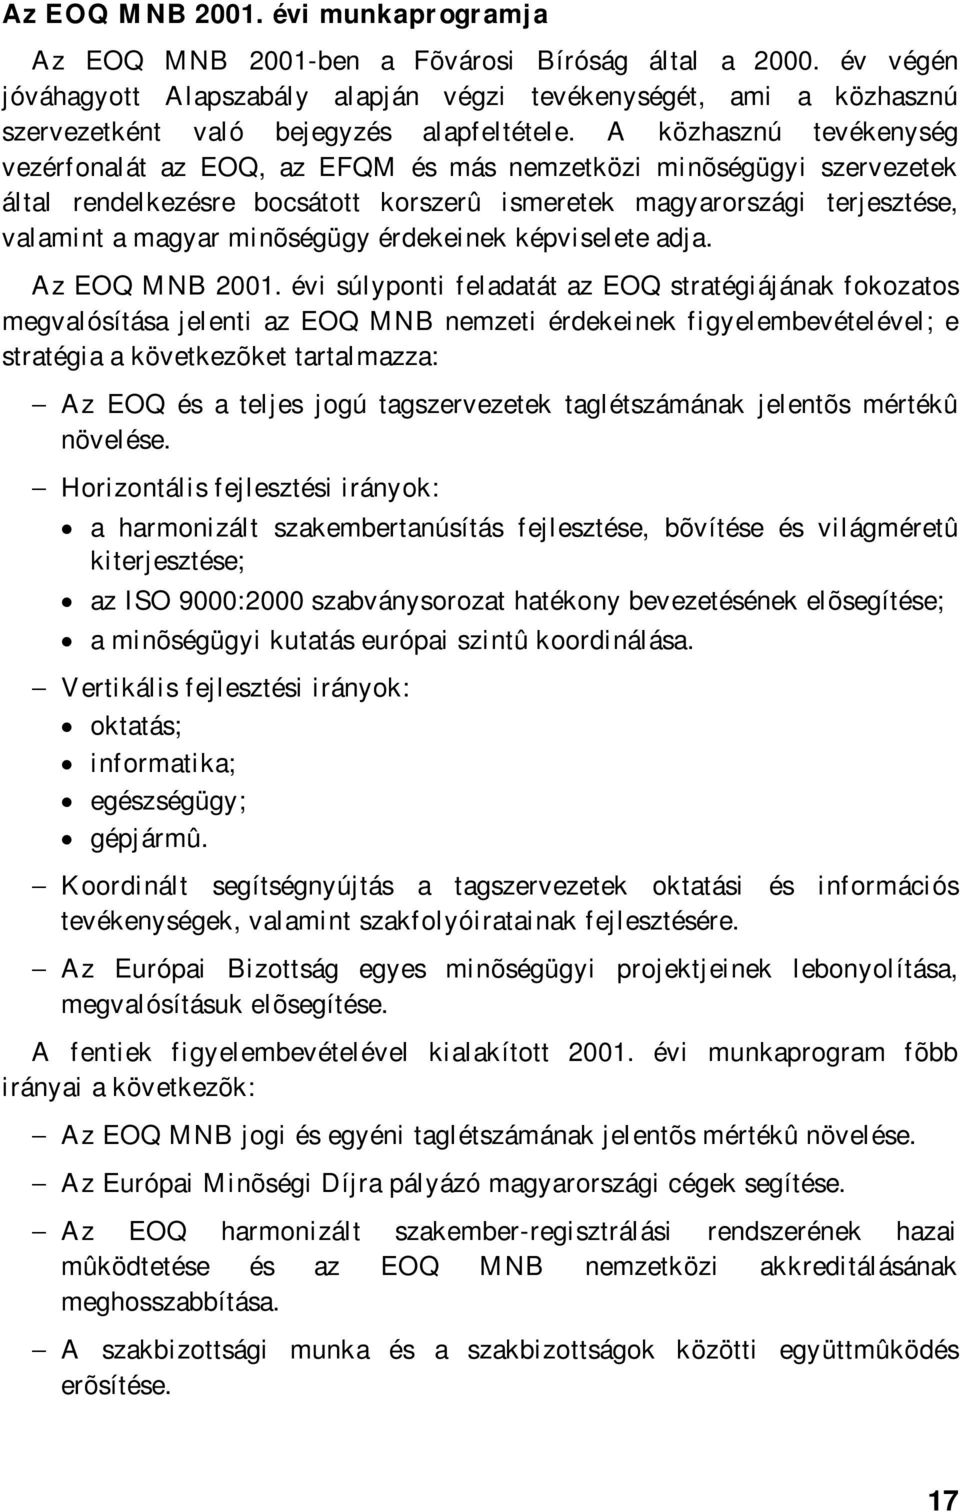 A közhasznú tevékenység vezérfonalát az EOQ, az EFQM és más nemzetközi minõségügyi szervezetek által rendelkezésre bocsátott korszerû ismeretek magyarországi terjesztése, valamint a magyar minõségügy